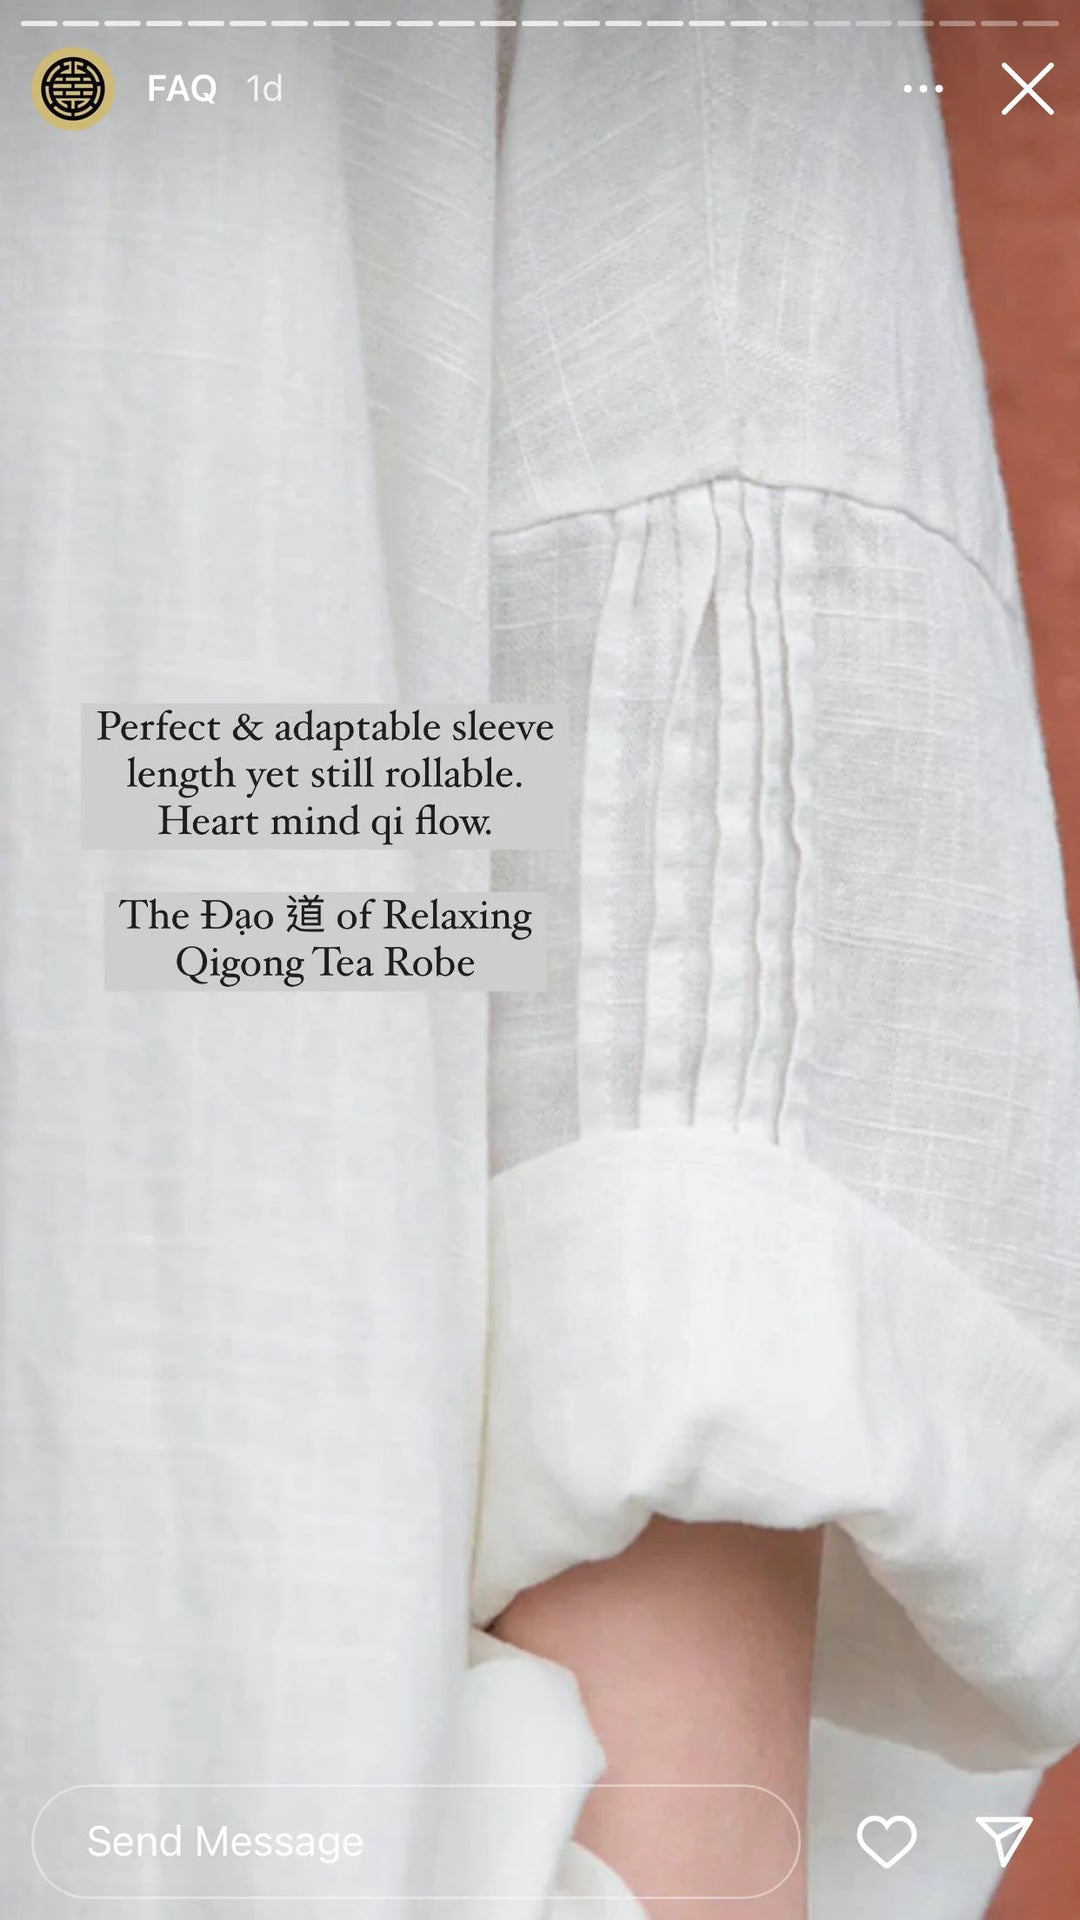 The Dao 道 of Relaxing Qigong Tea Robe